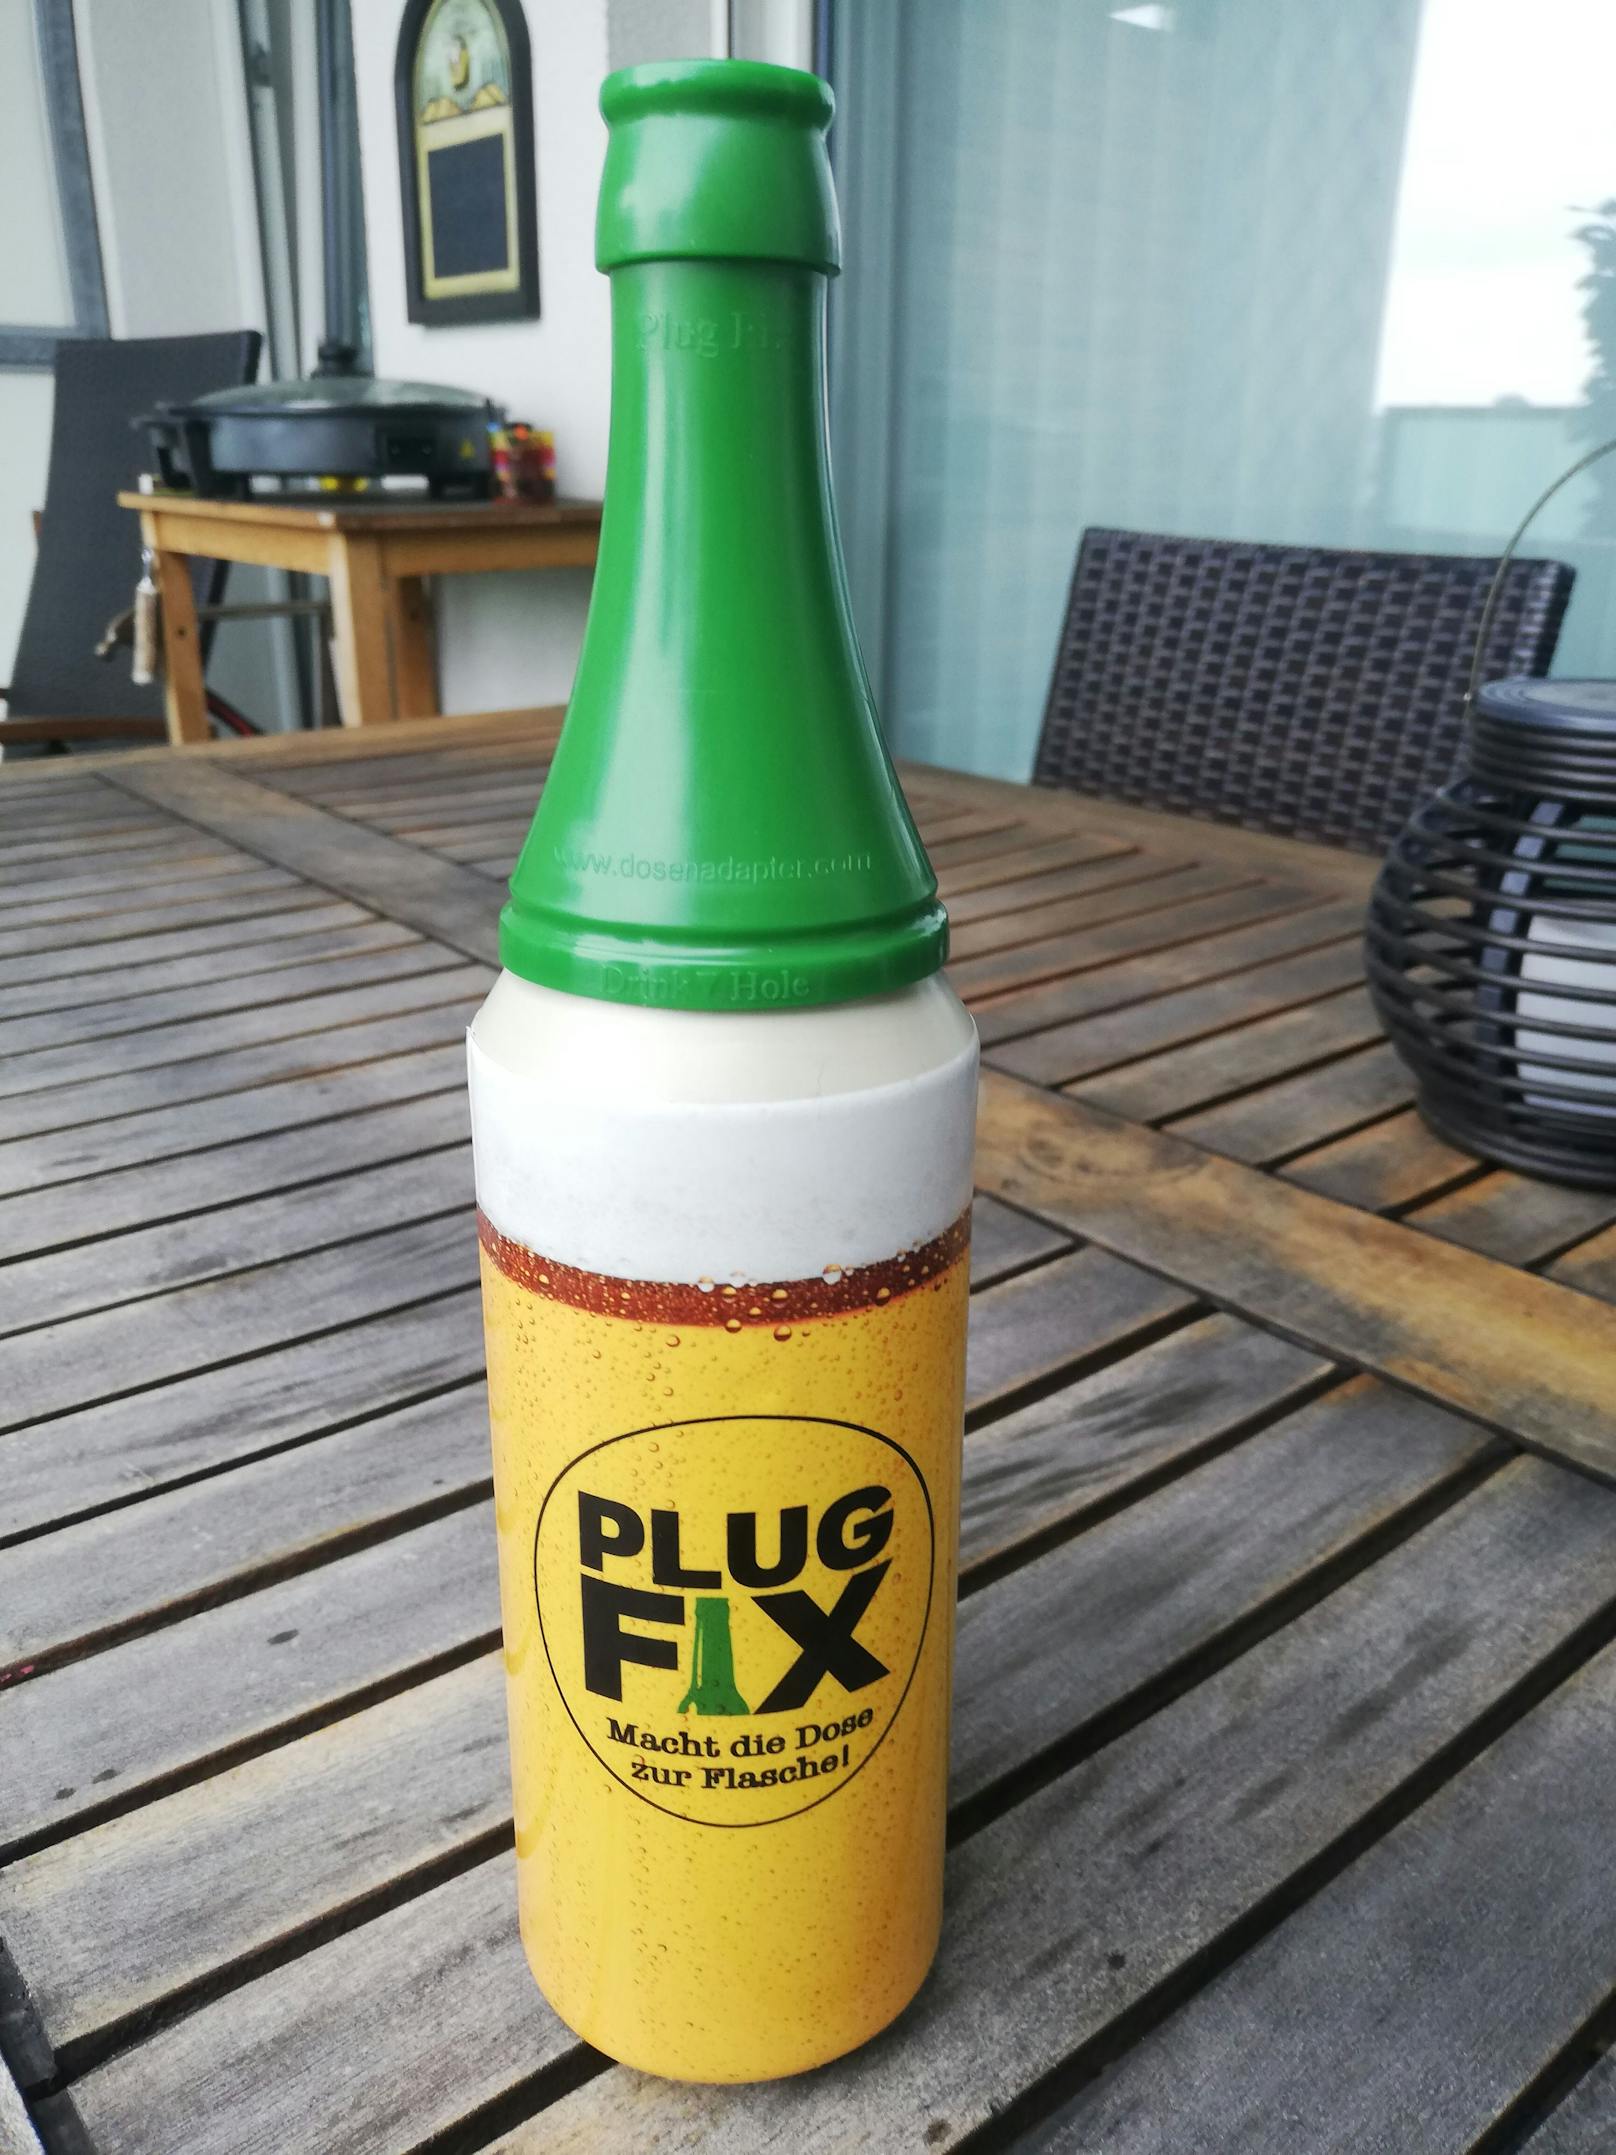 Der PlugFix-Adapter macht aus der Bierdose eine Bierflasche. Die Erfindung aus OÖ ist online erhältlich.